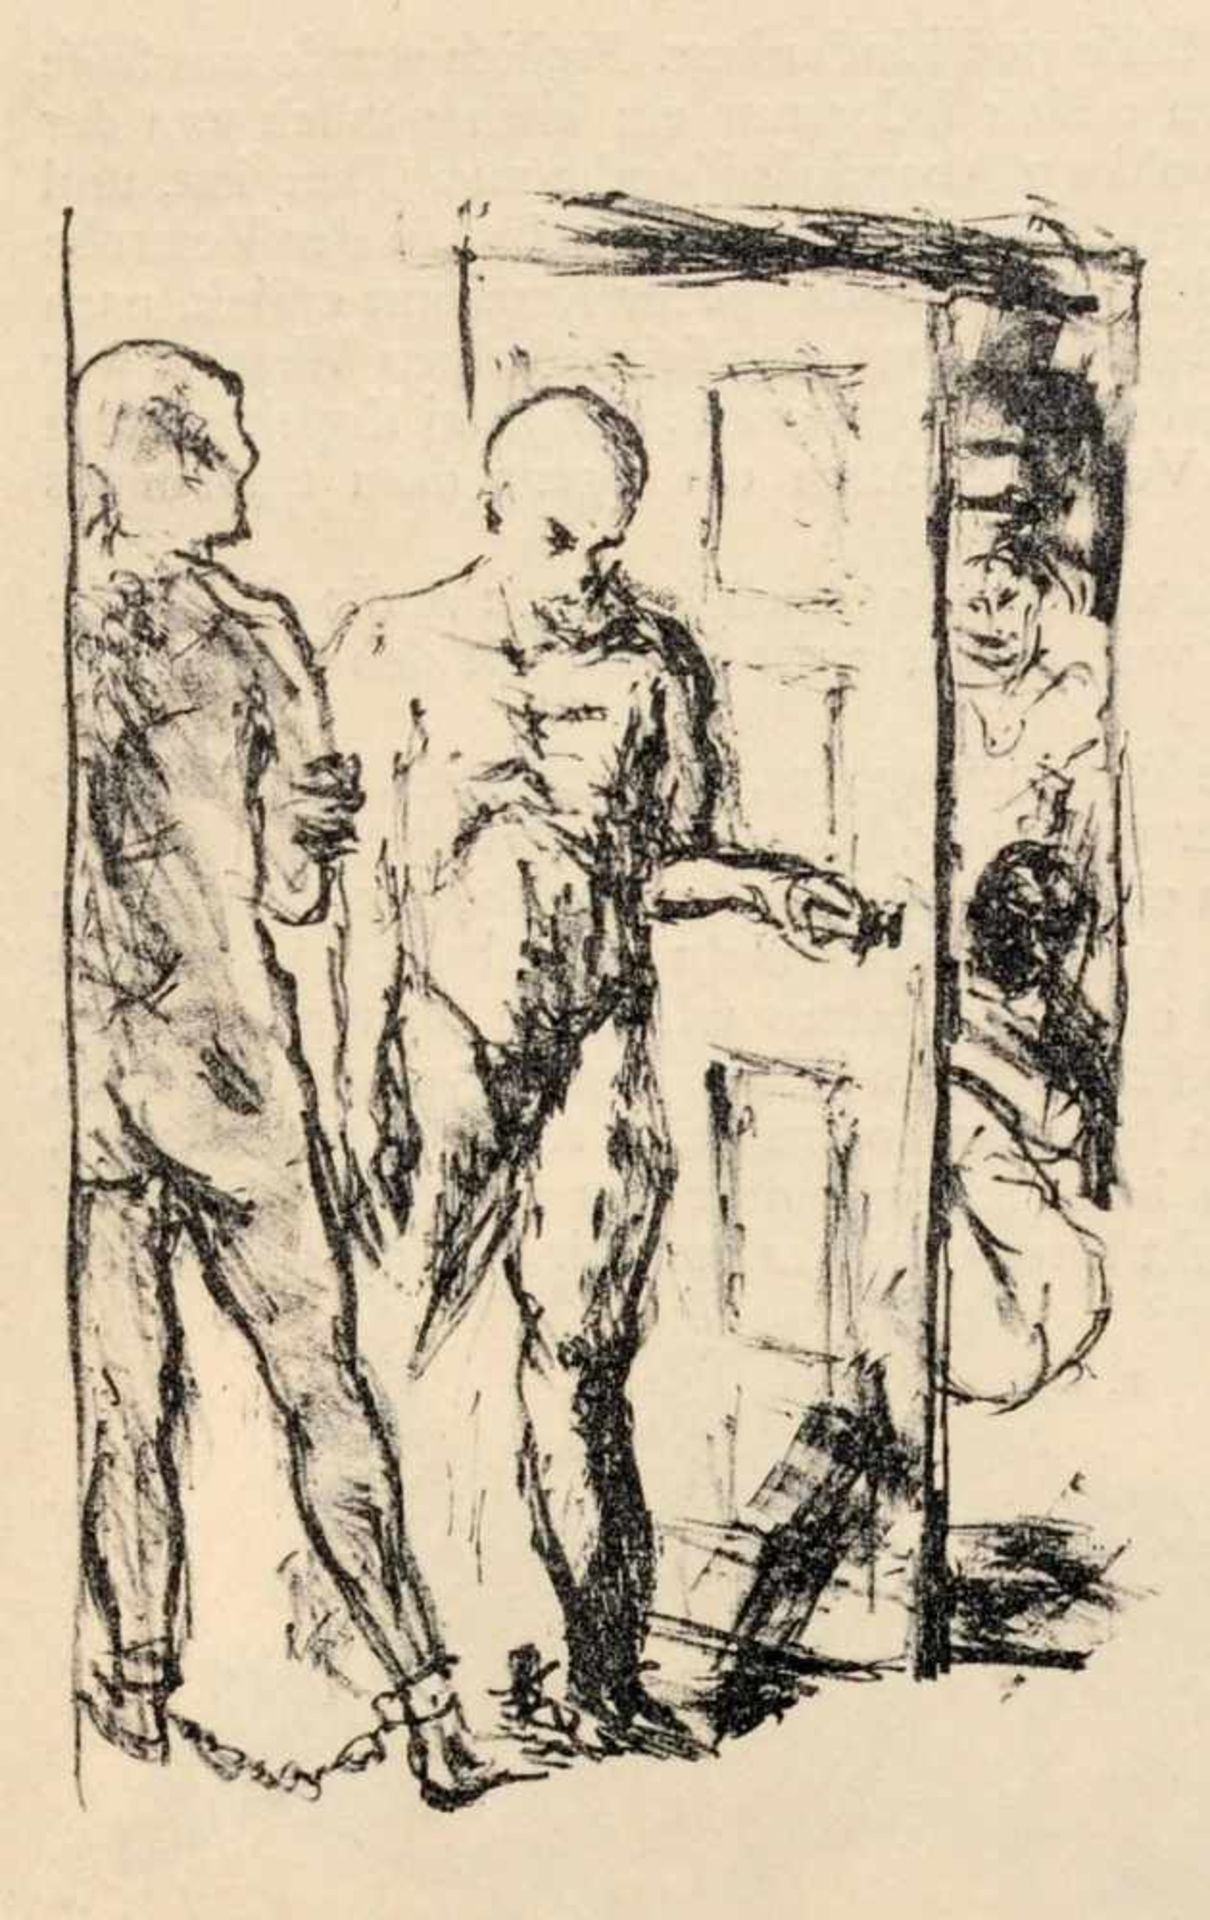 Max Beckmann, Sieben Illustrationen zu Dostojewskijs "Aus einem Totenhaus". 1913.Max Beckmann 1884 - Bild 4 aus 7